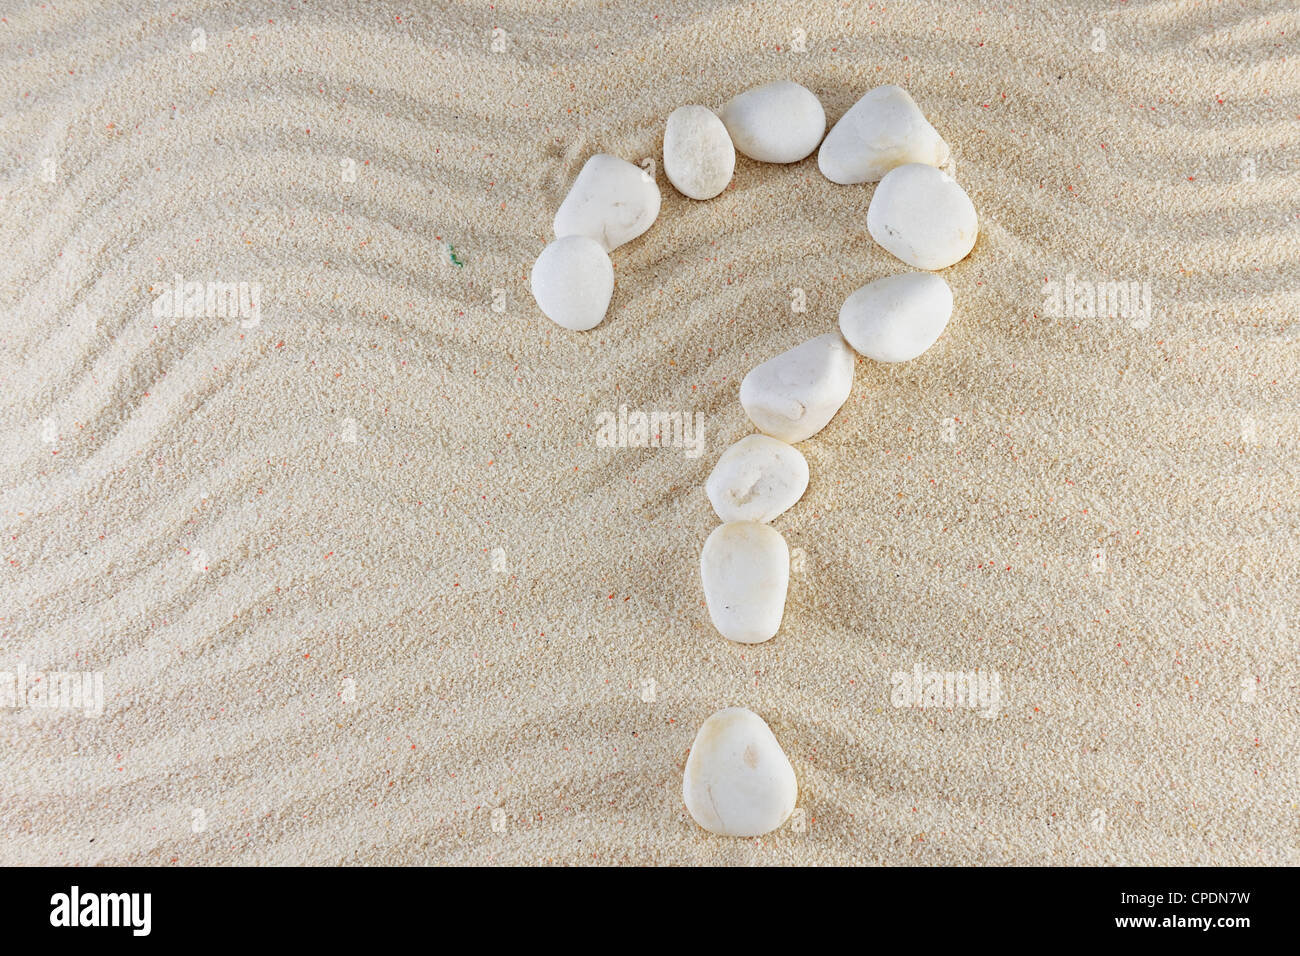 Fragezeichen aus Steinen mit Sand als Hintergrund Stockfoto